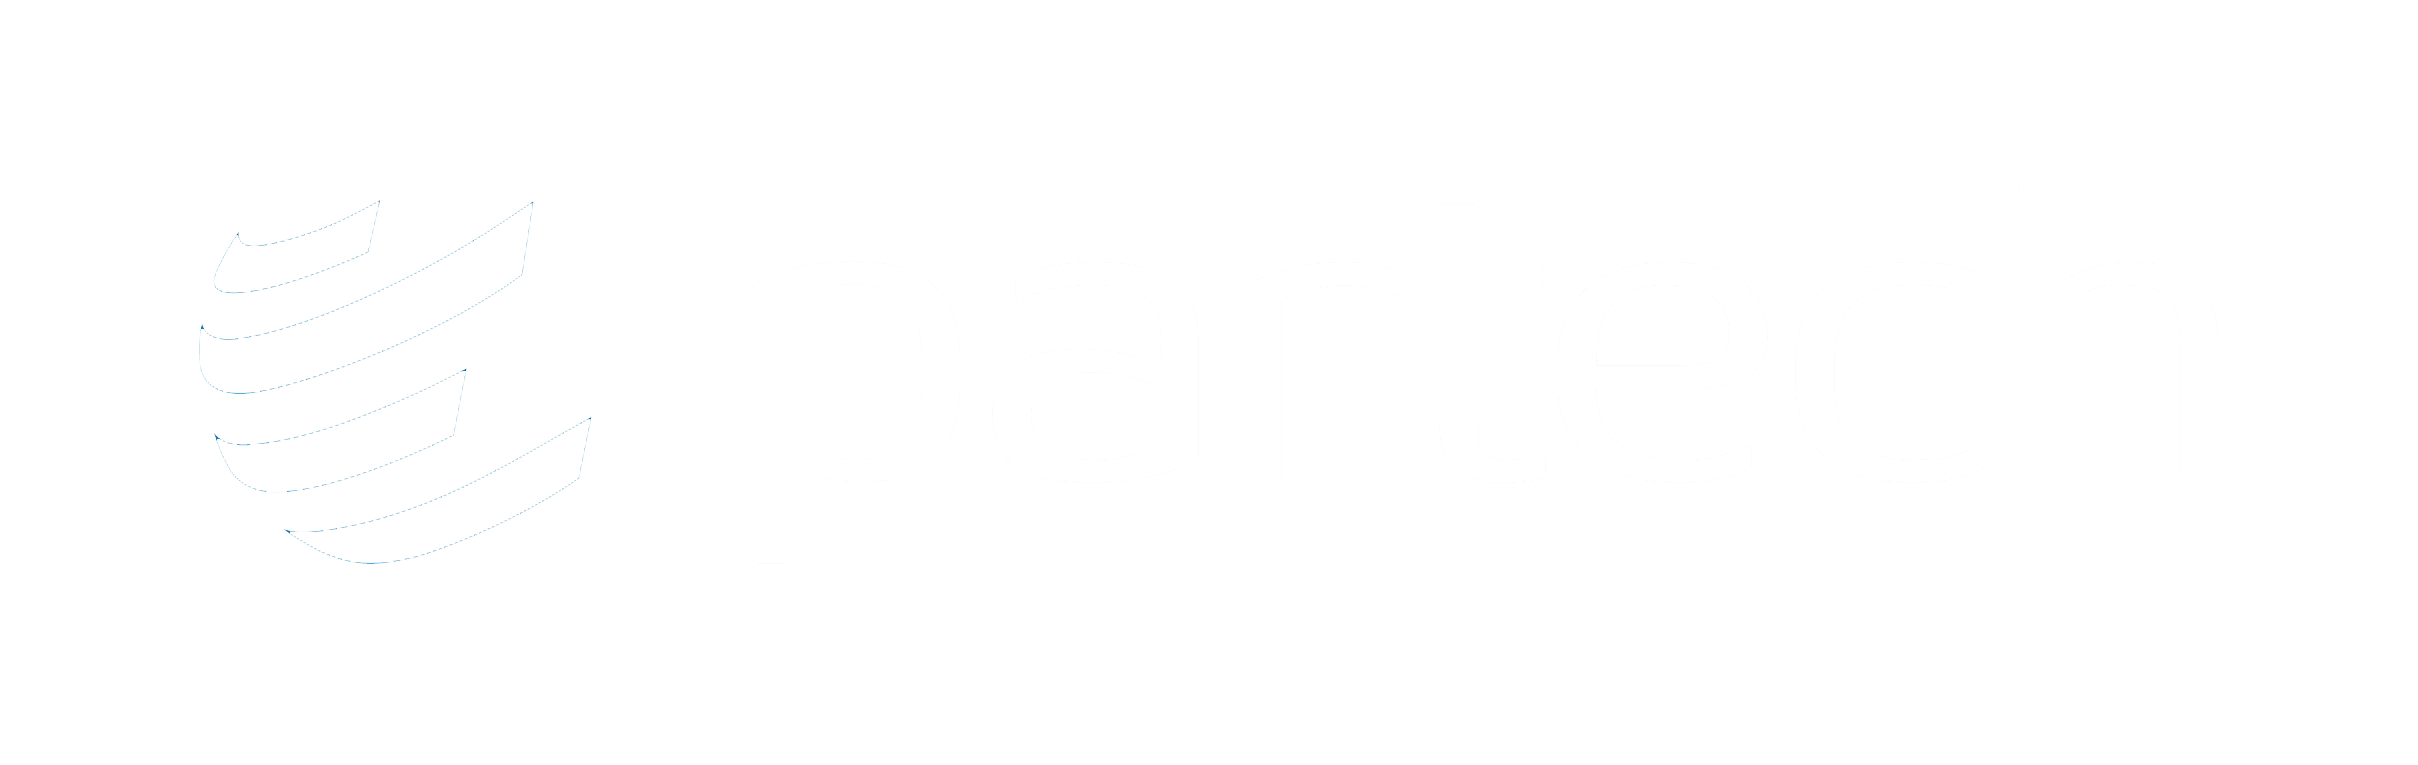 Logo-Partech